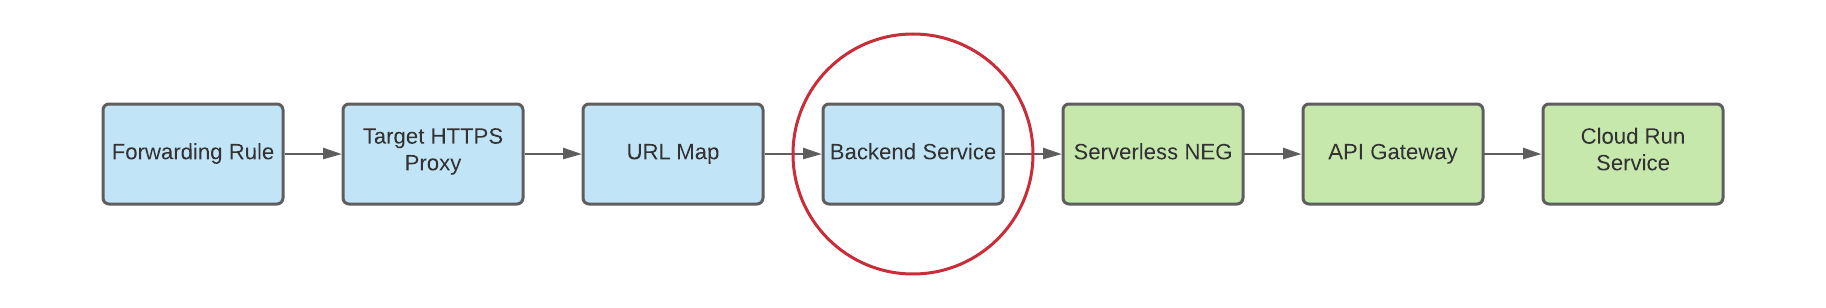 バックエンド サービスのバックエンドとしてのサーバーレス NEG を示す図